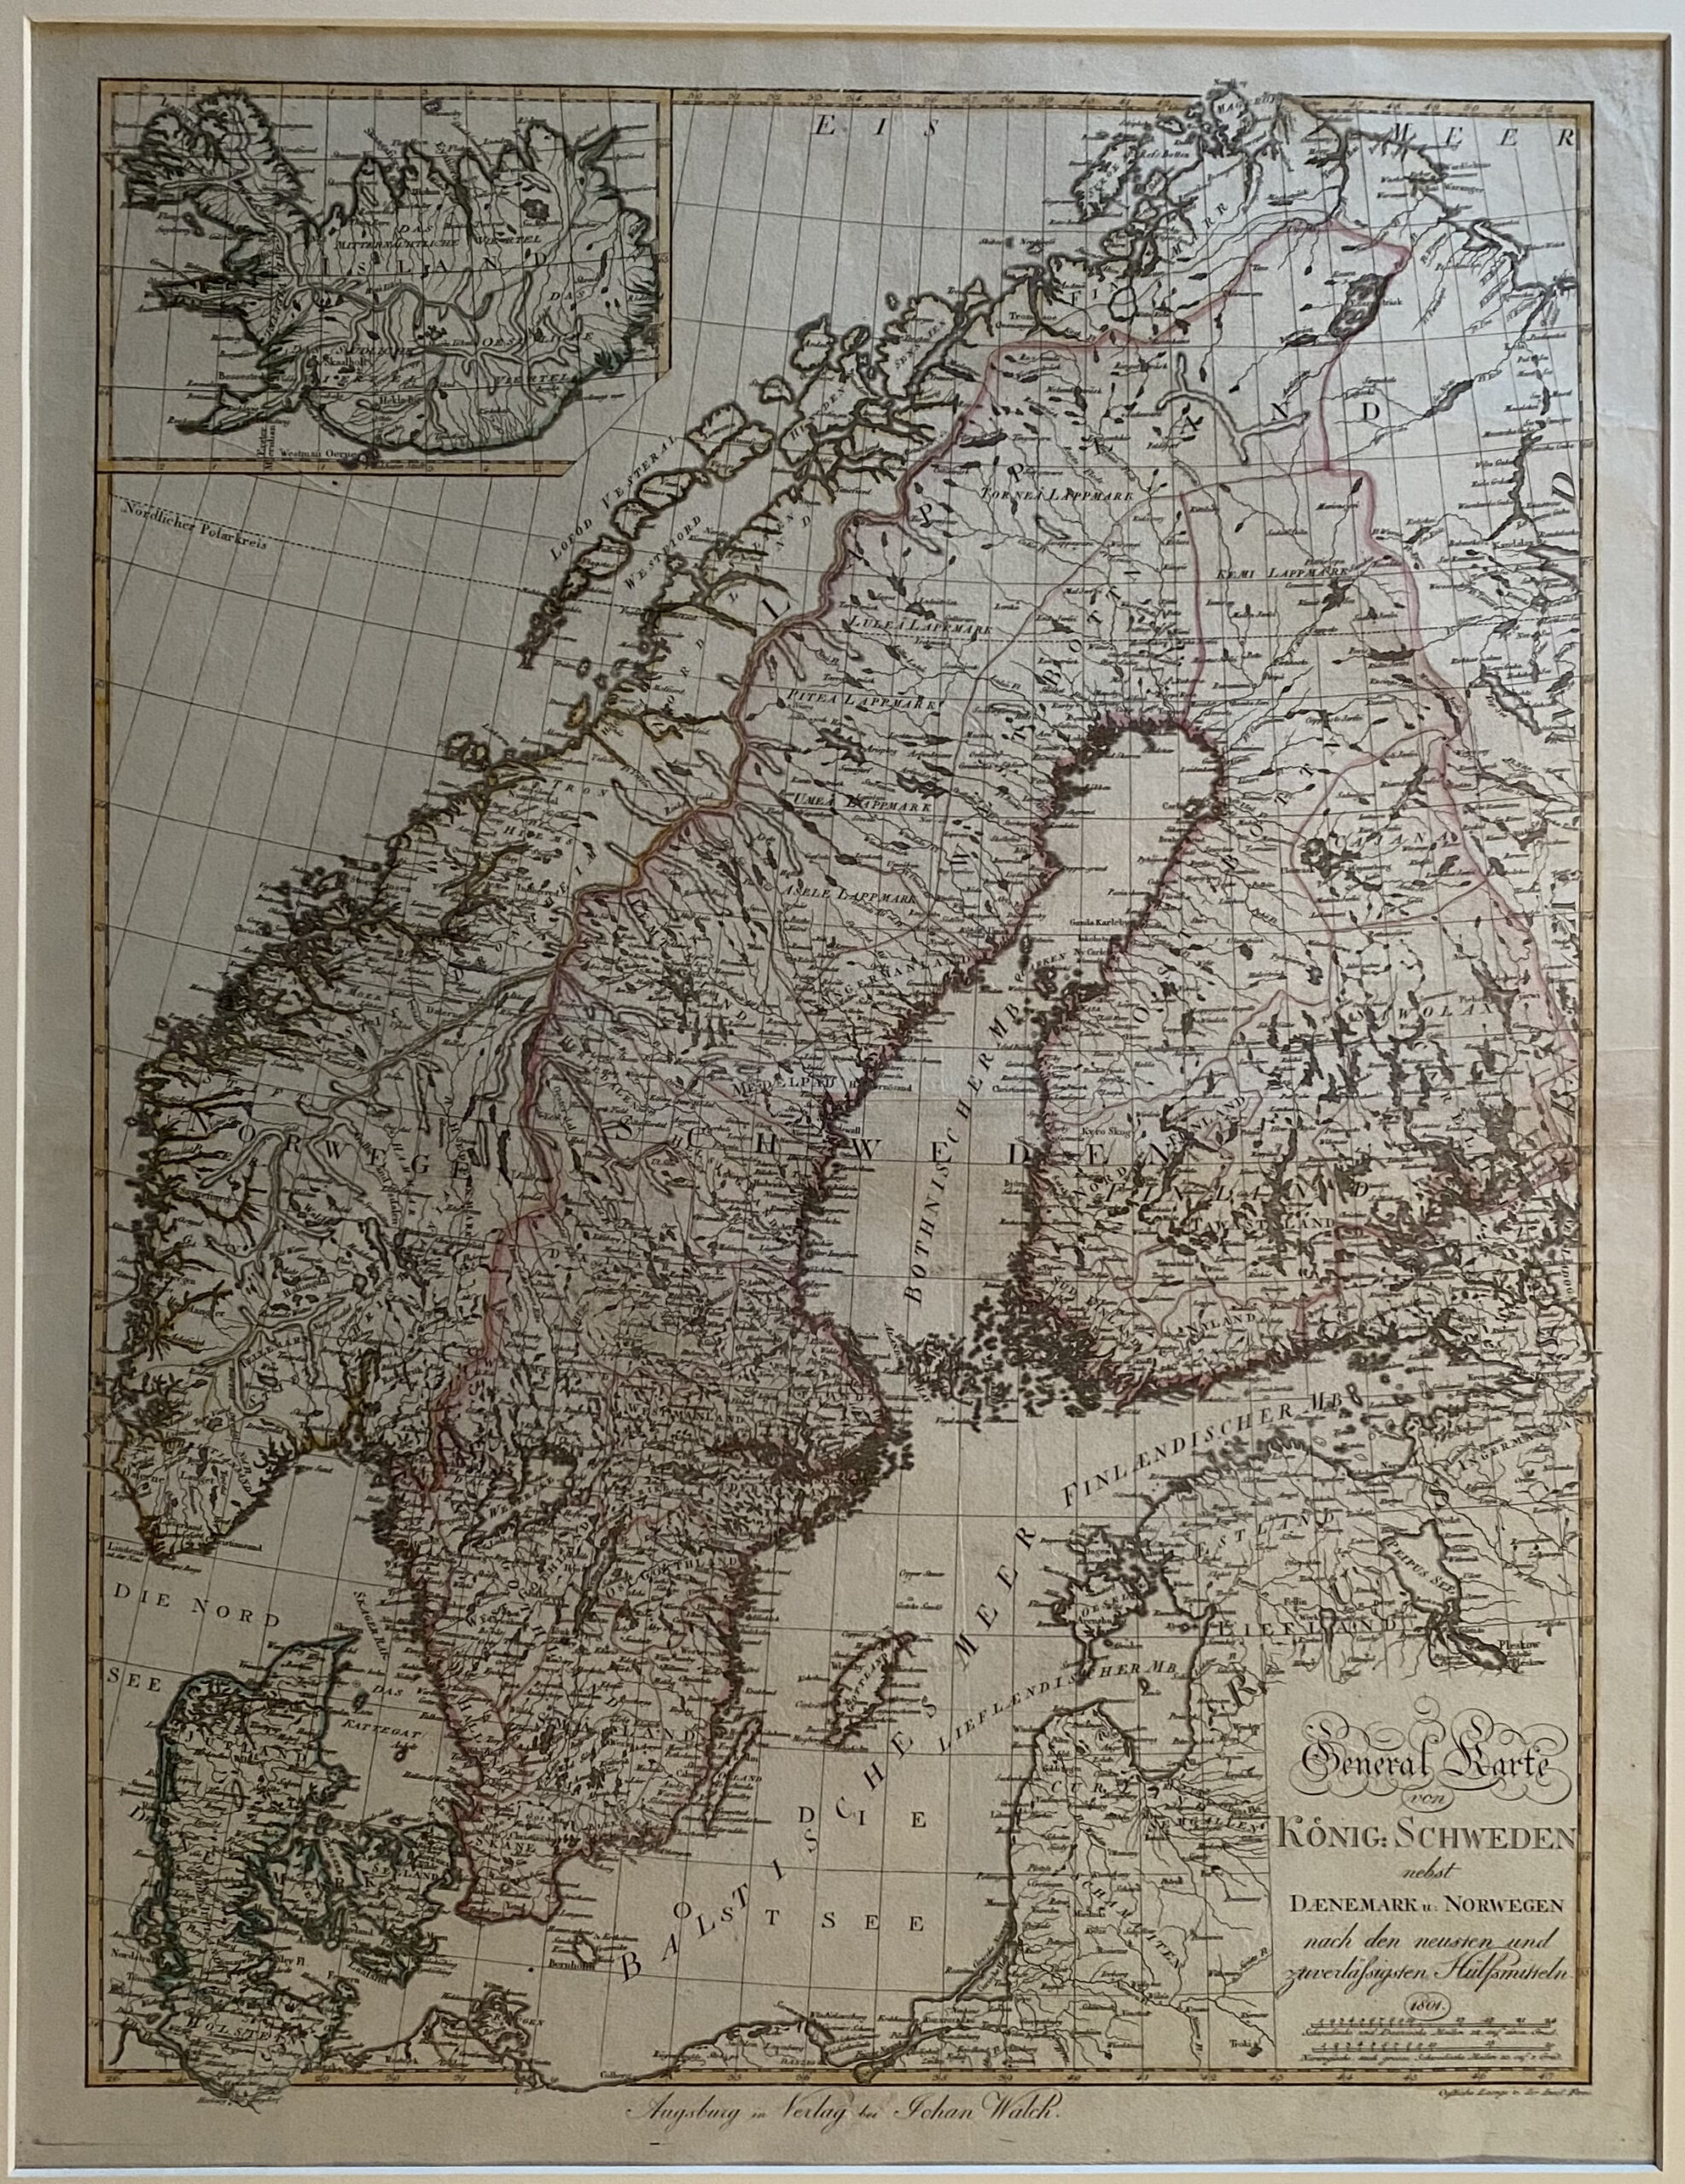 Generalkarte von König: Schweden nebst Daenemark u. Norwegen  nach den neuesten und zuverlässigsten Hilfsmitteln 1801